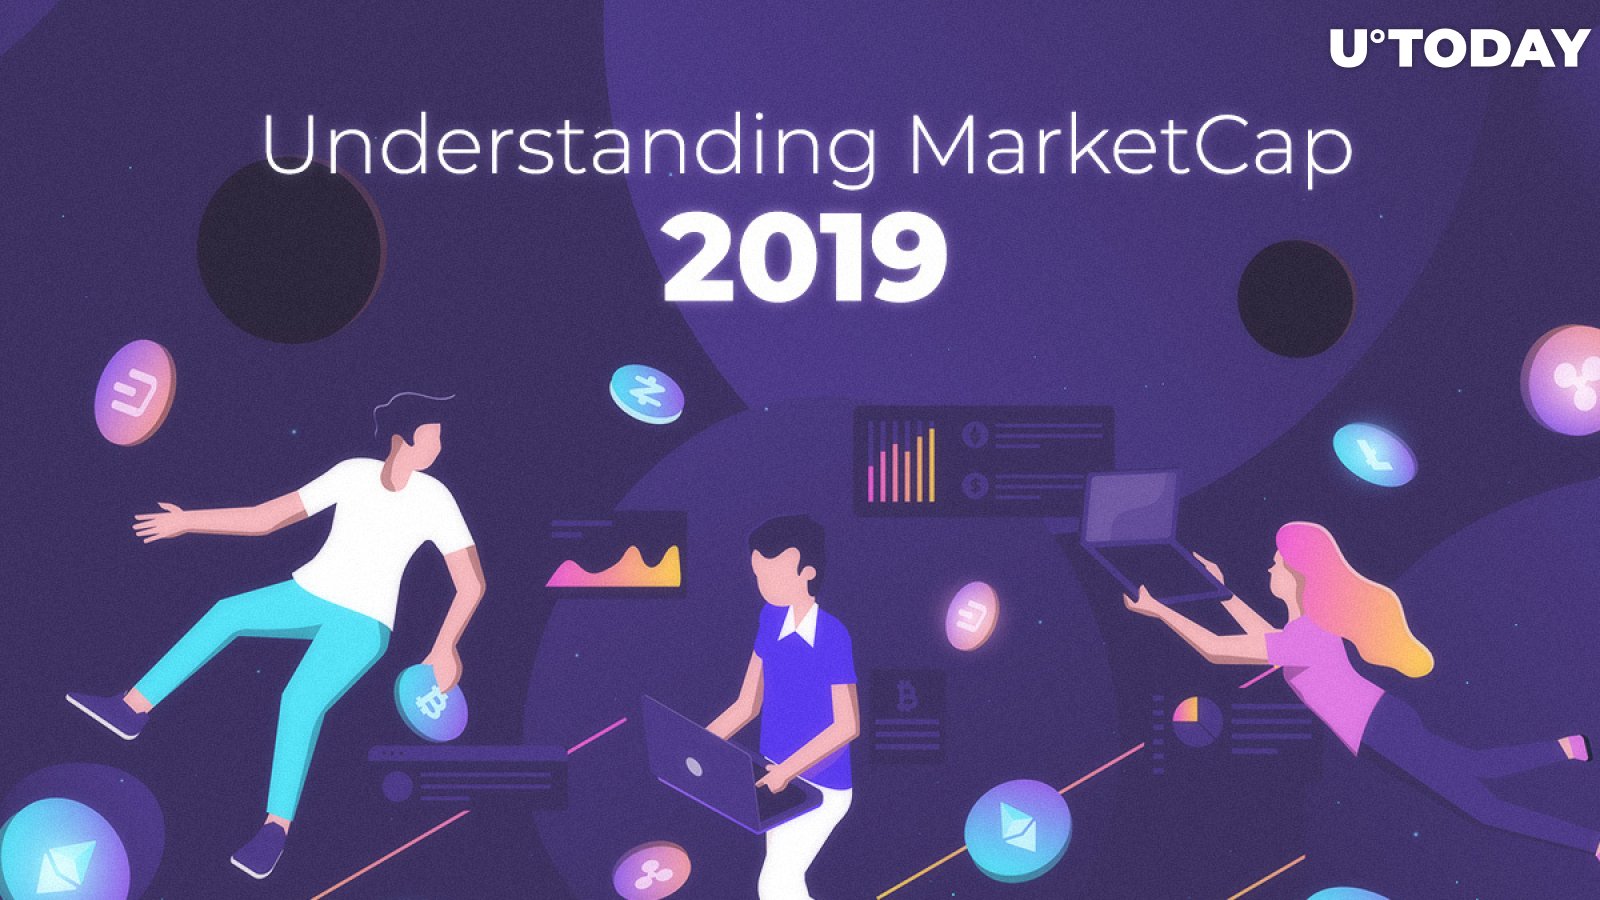 Cryptocurrency Market Capitalization — Understanding Market Cap in 2019